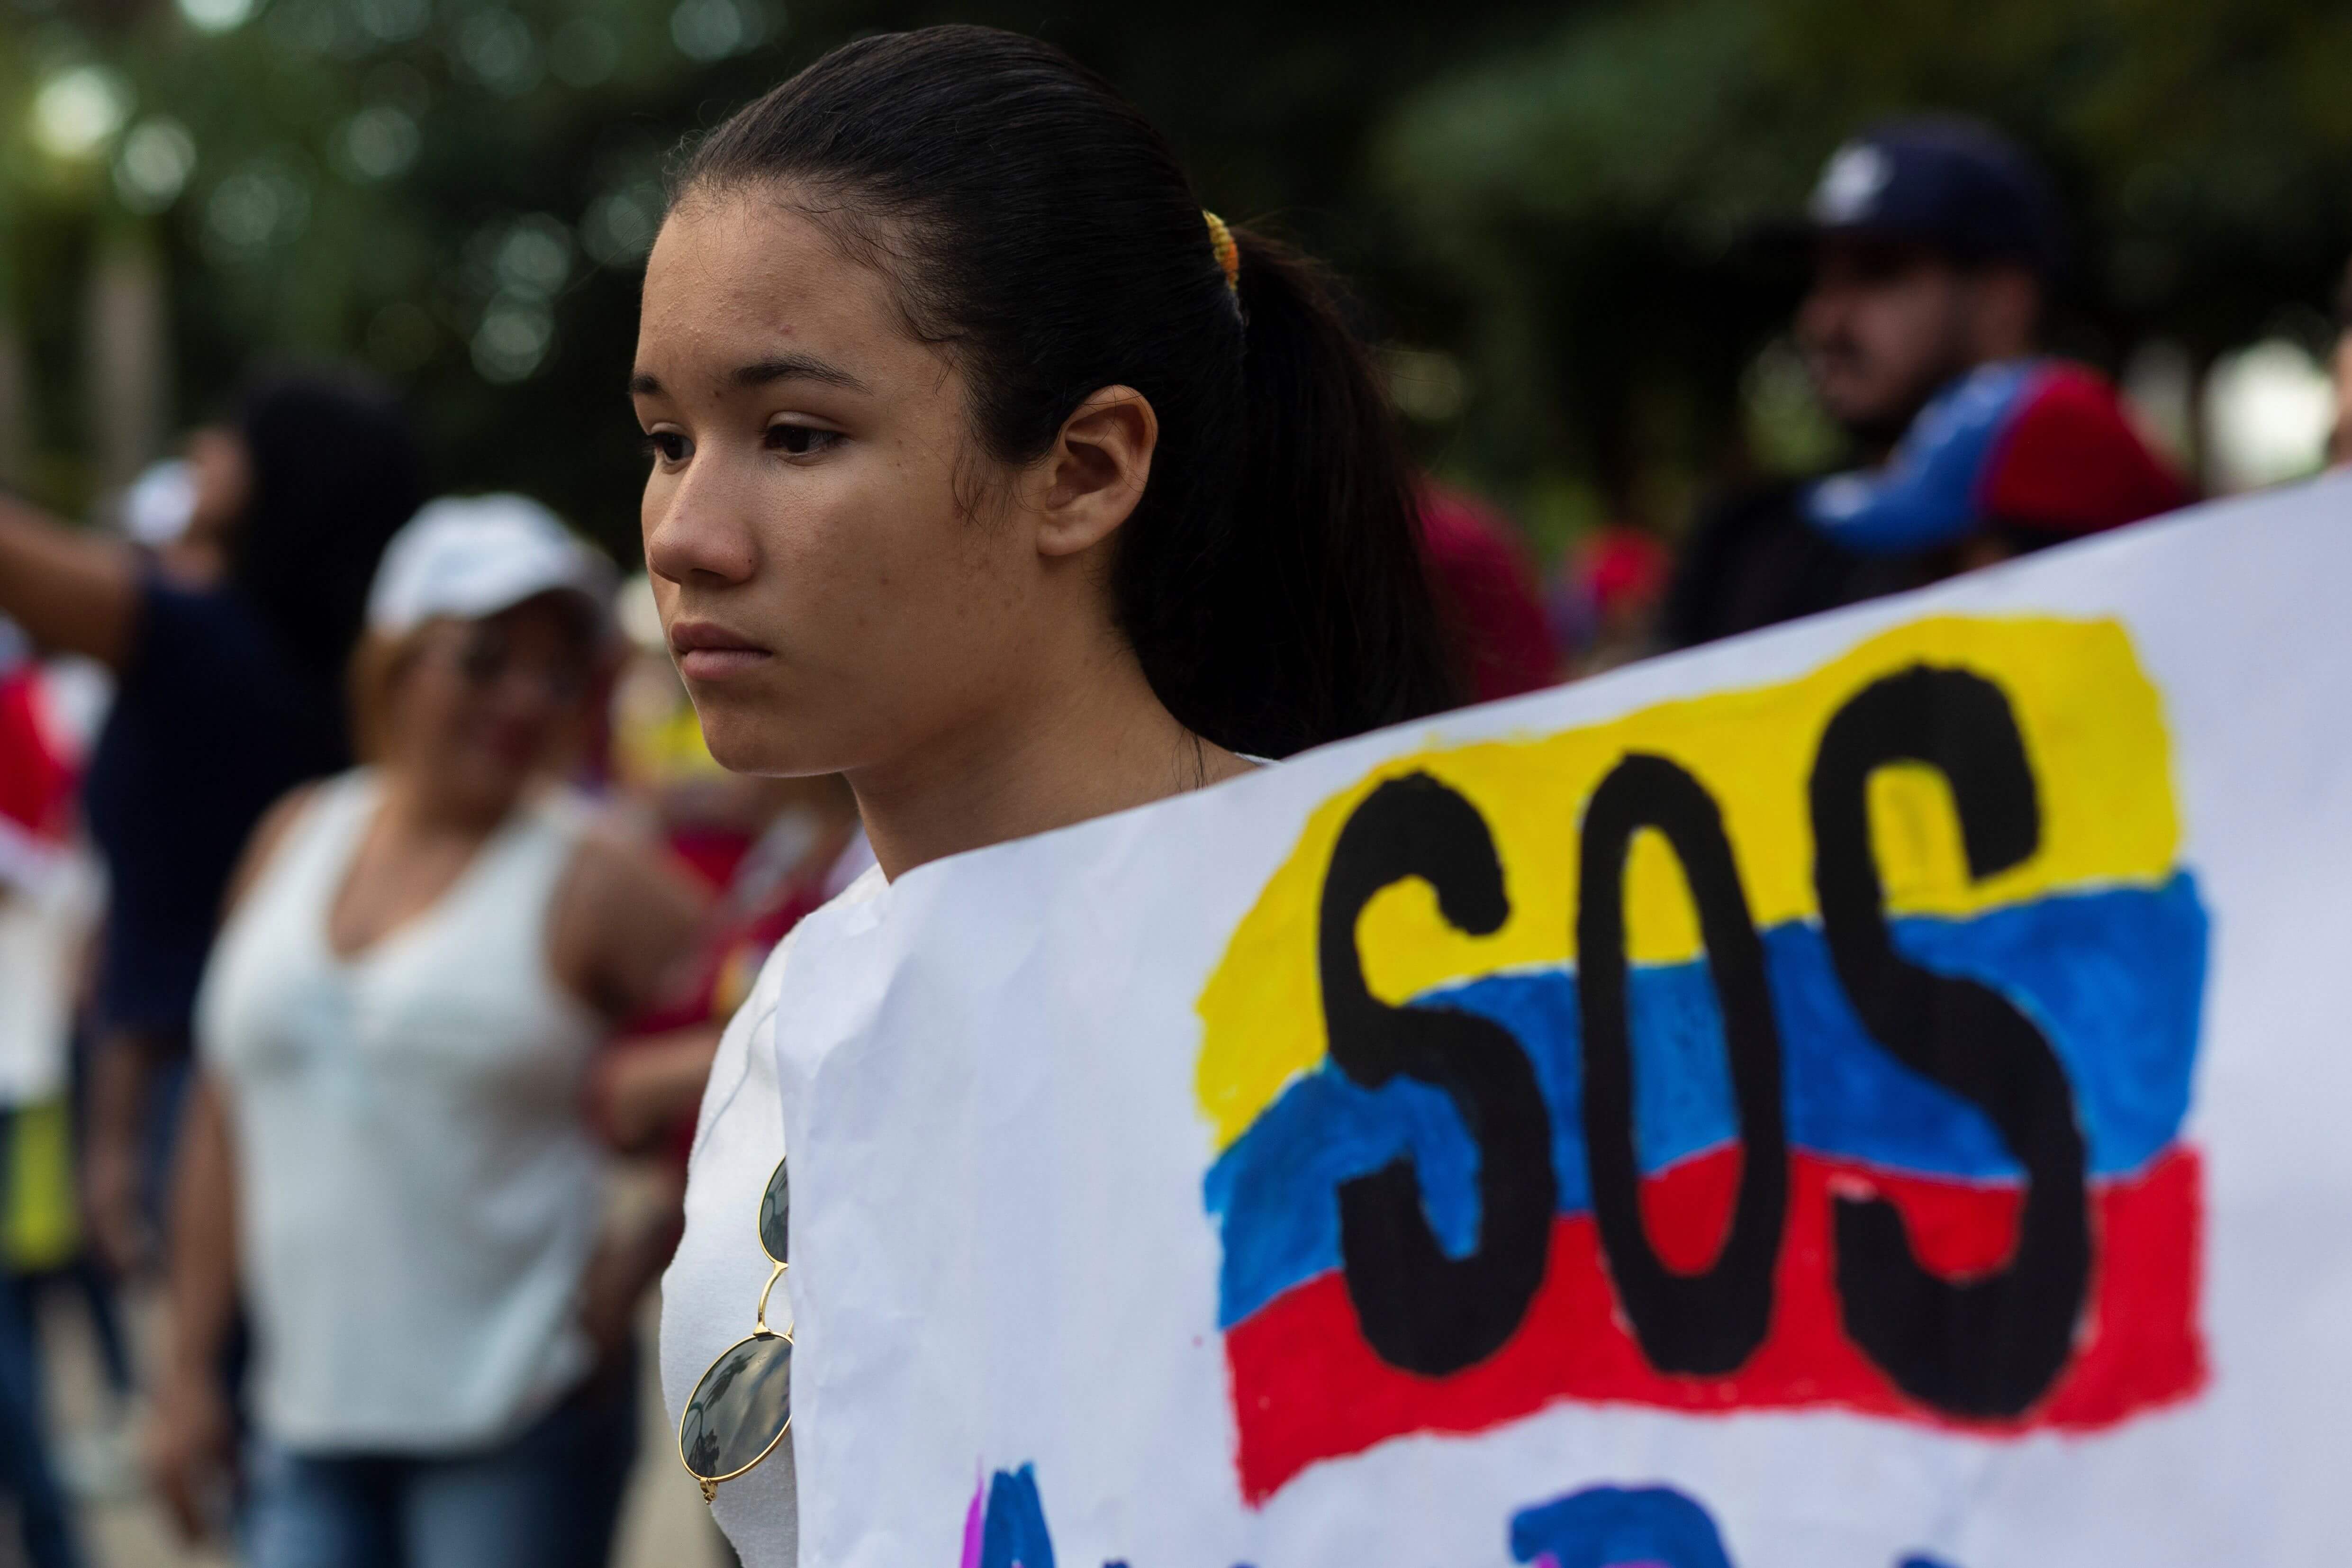 FOTO Ebrard: Nosotros no defender a Maduro, ni su régimen/ mujer protesta en venezuela 4 febrero 2019